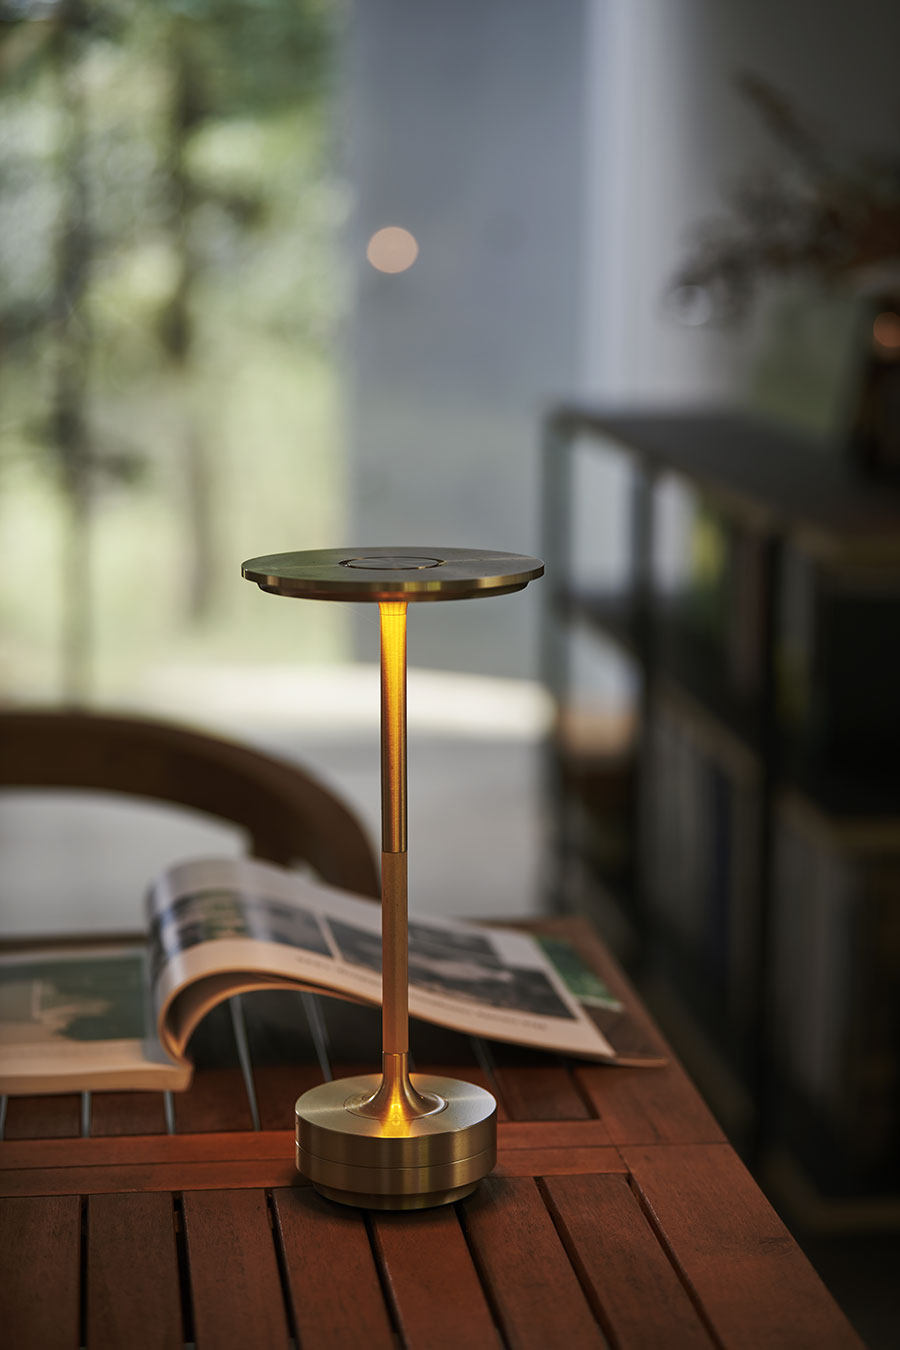 やわらかな光を灯す「アンビテック」のテーブルランプはコードレス。家具と同様に、どこへでも移動できる。